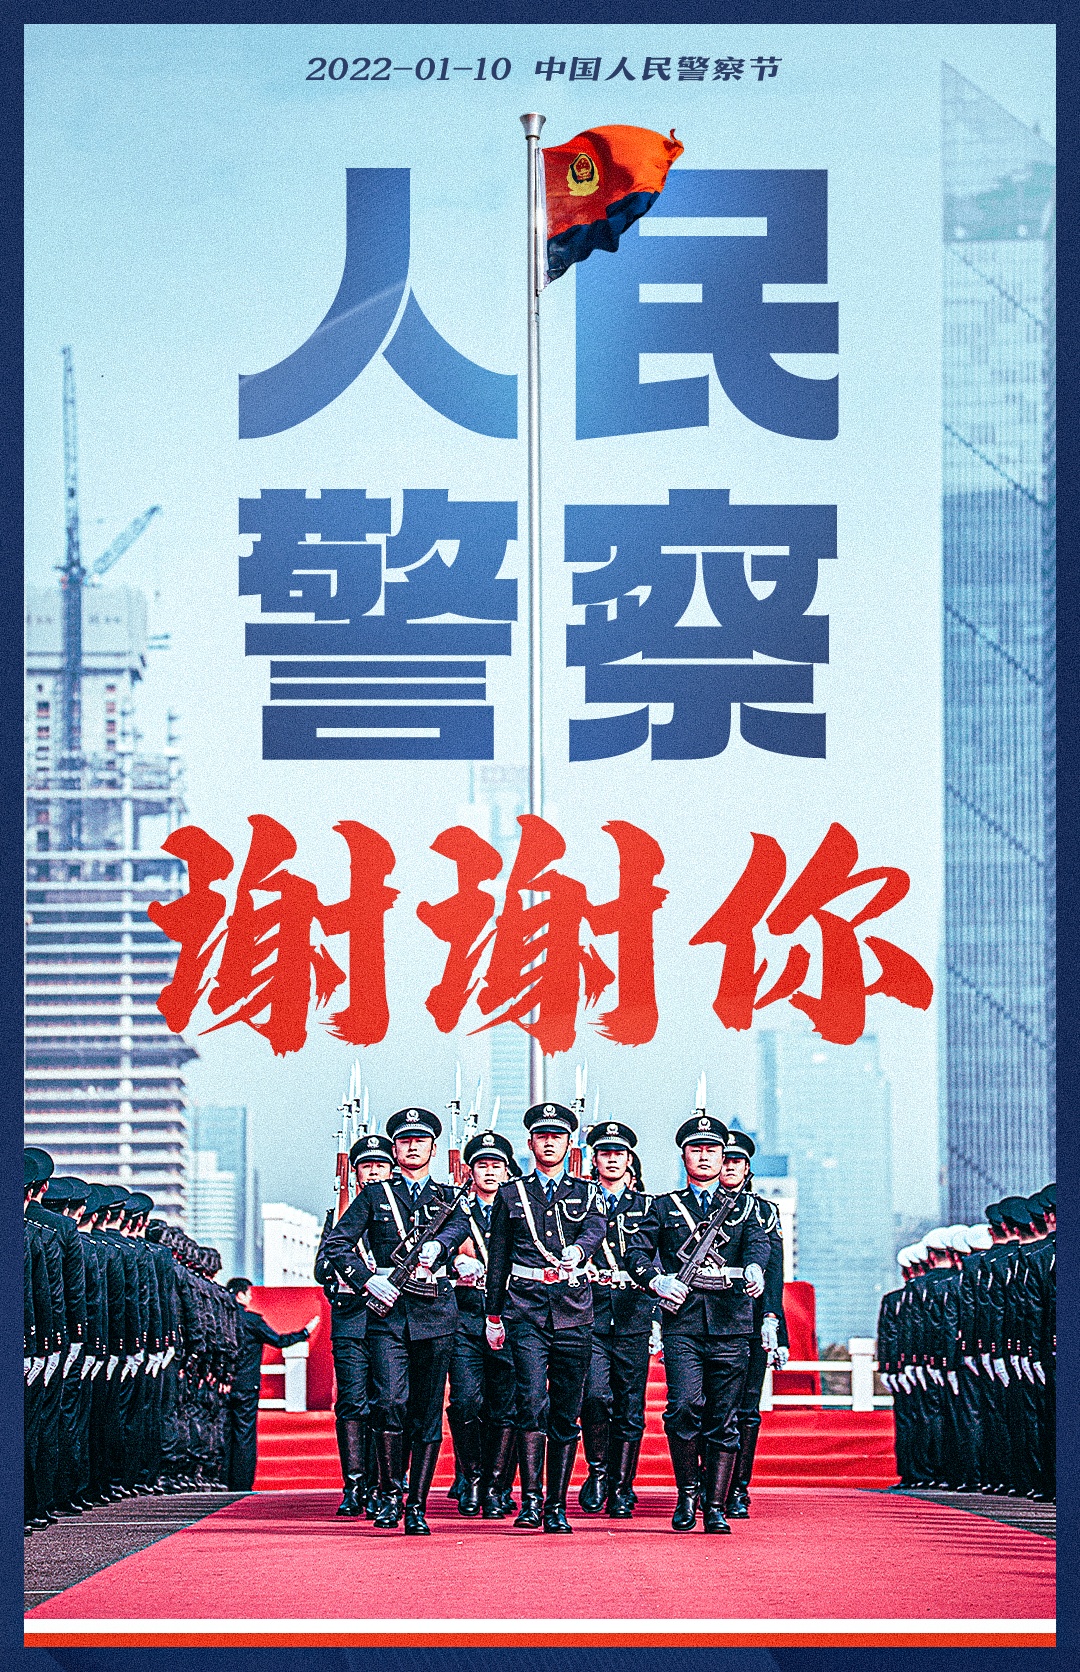 上海巡逻现场实录2021(上海警方纪录片竟然这样打码……网友：令人舒适)